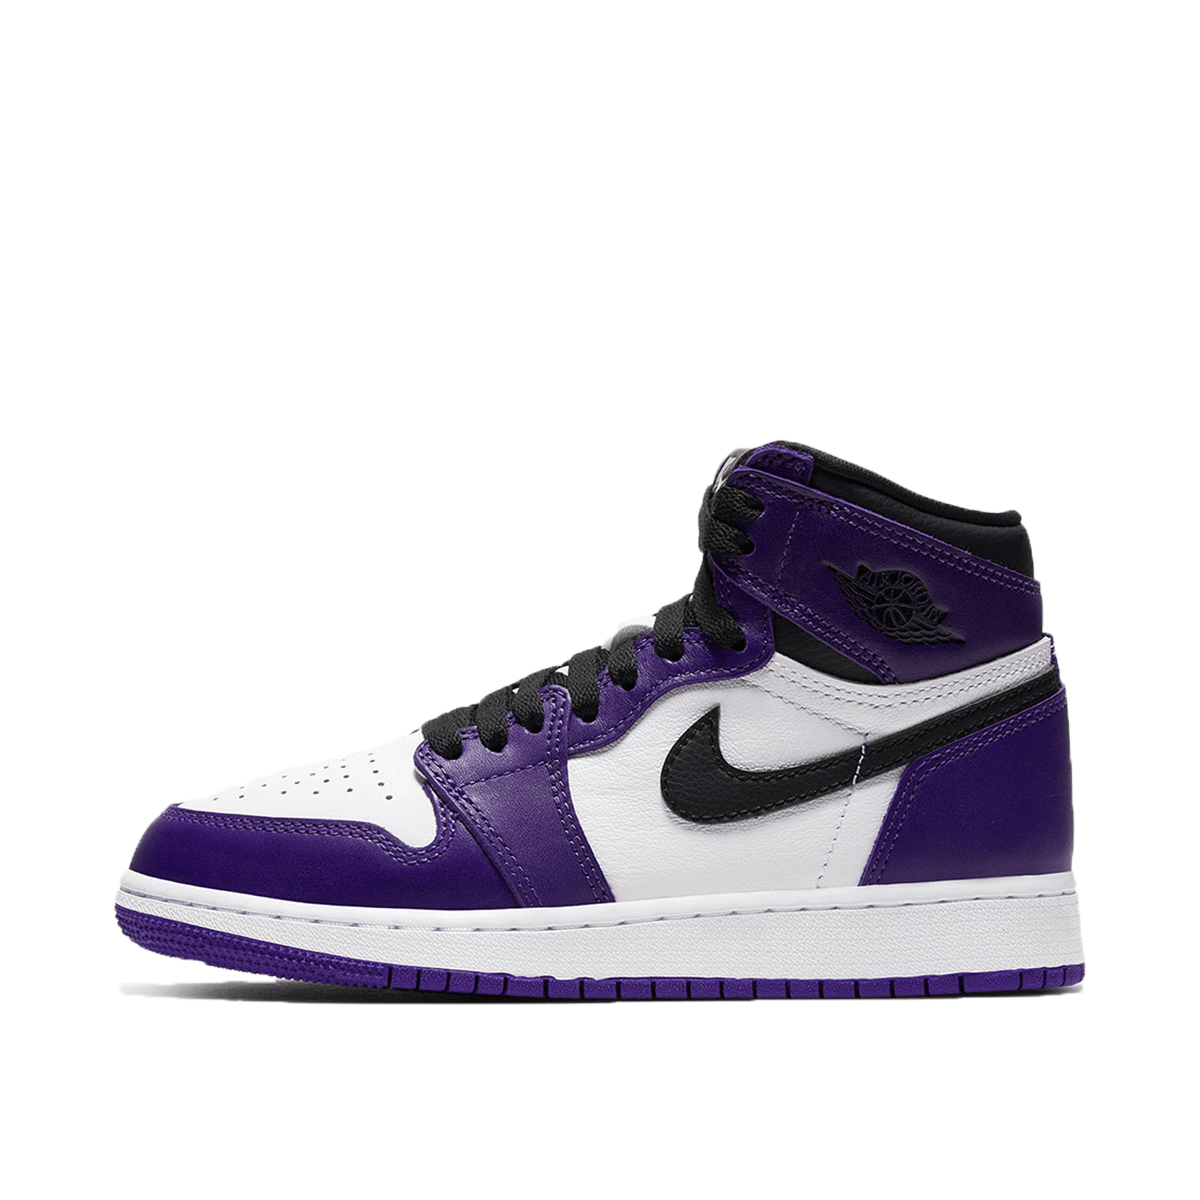 jordan 1 high court purple gs